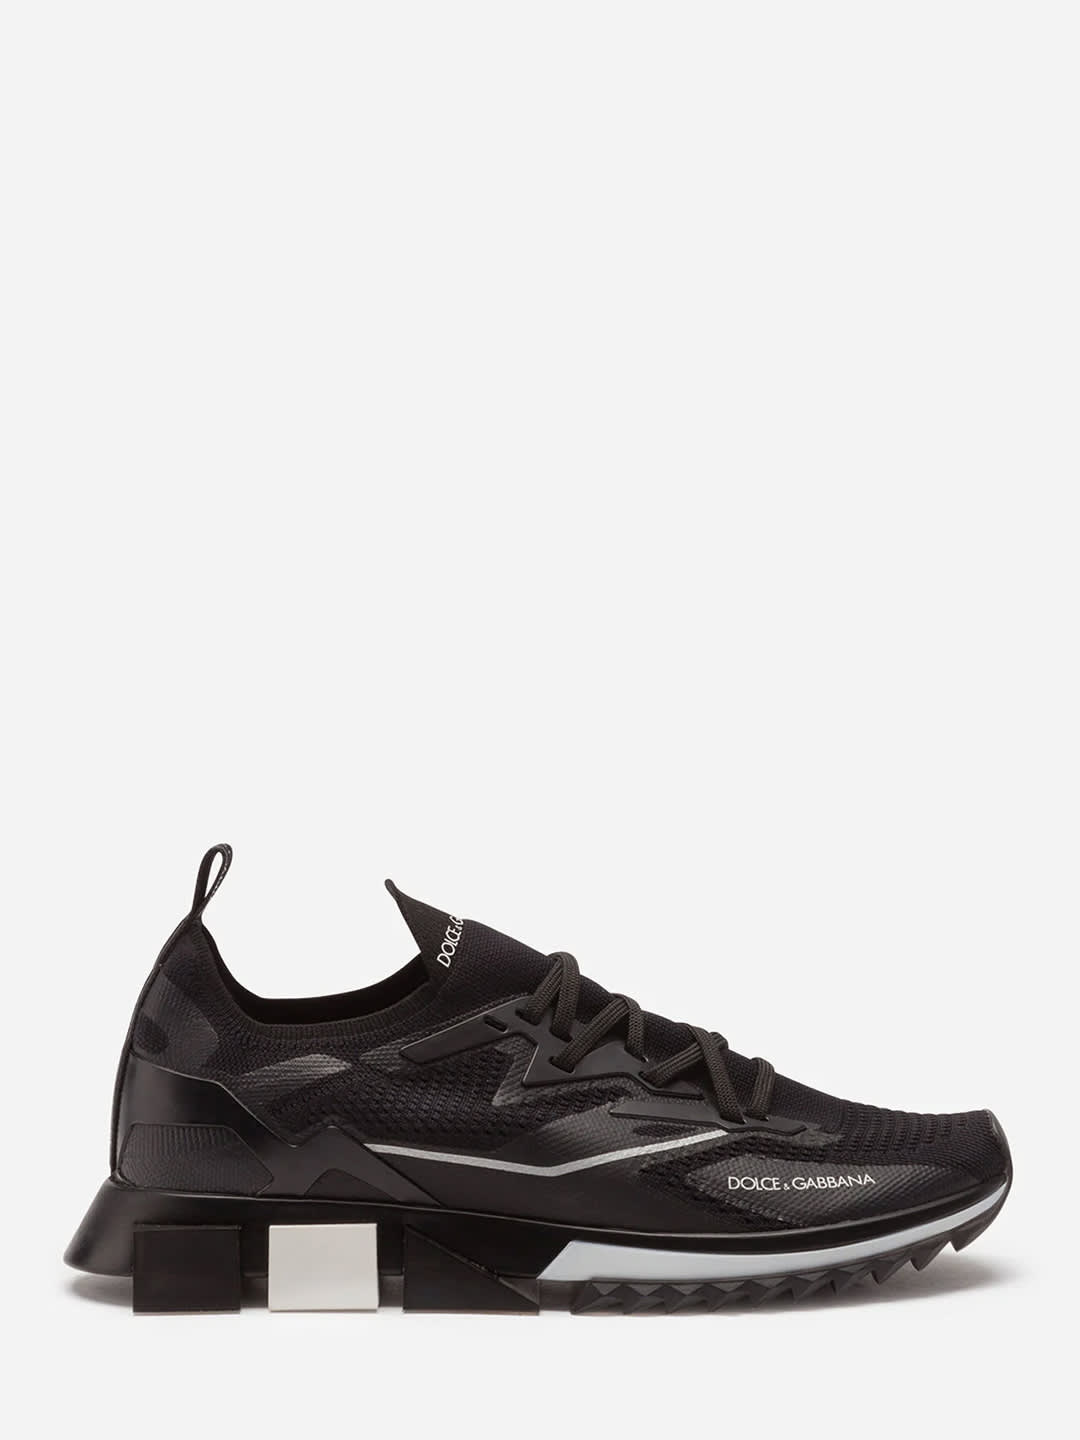 Dolce & Gabbana Sorrento Black Sneakers